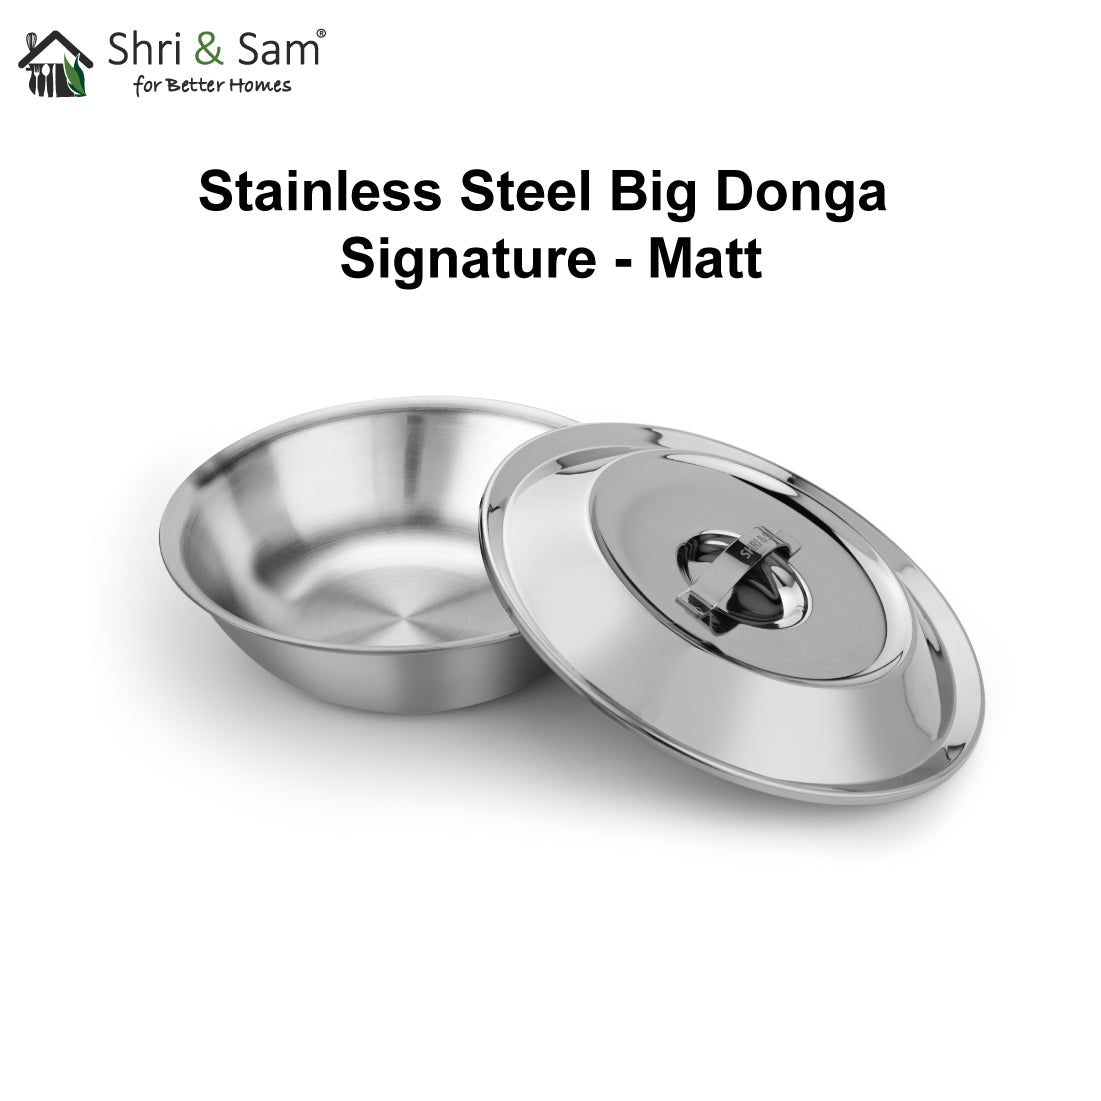 Stainless Steel Big Donga Signature - Matt